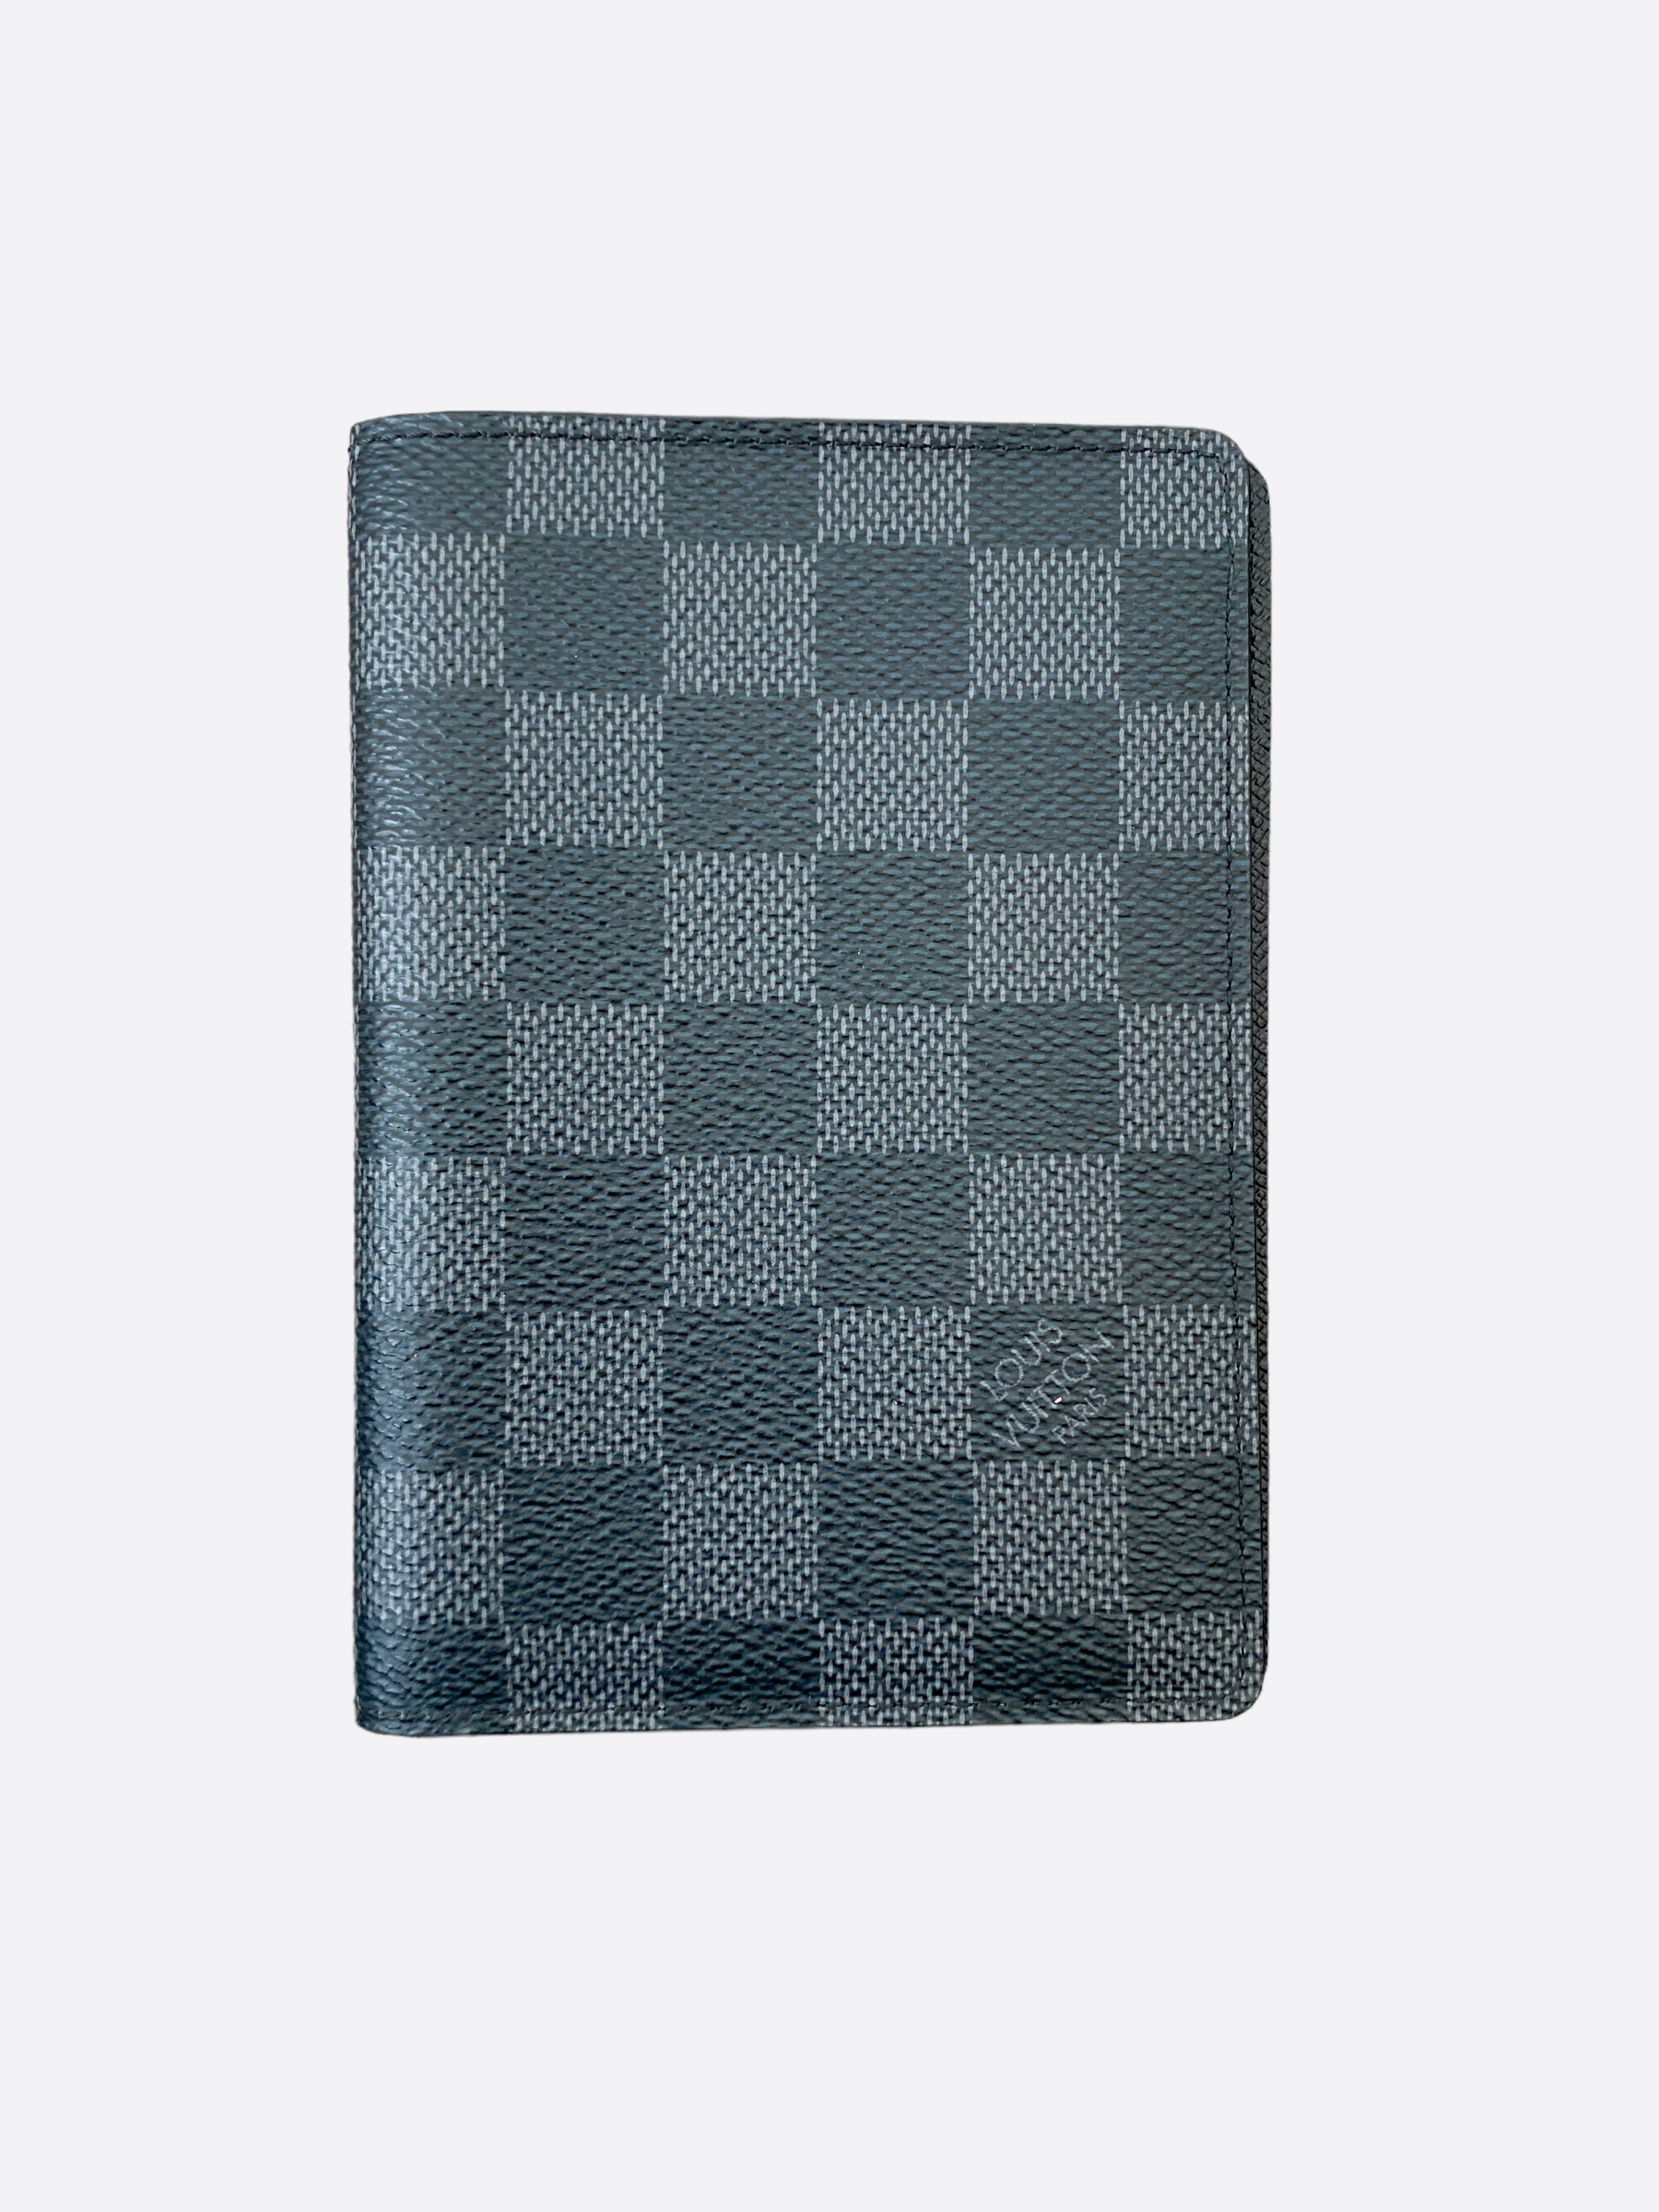 Louis Vuitton Damier Ebene Passport Cover - modaselle